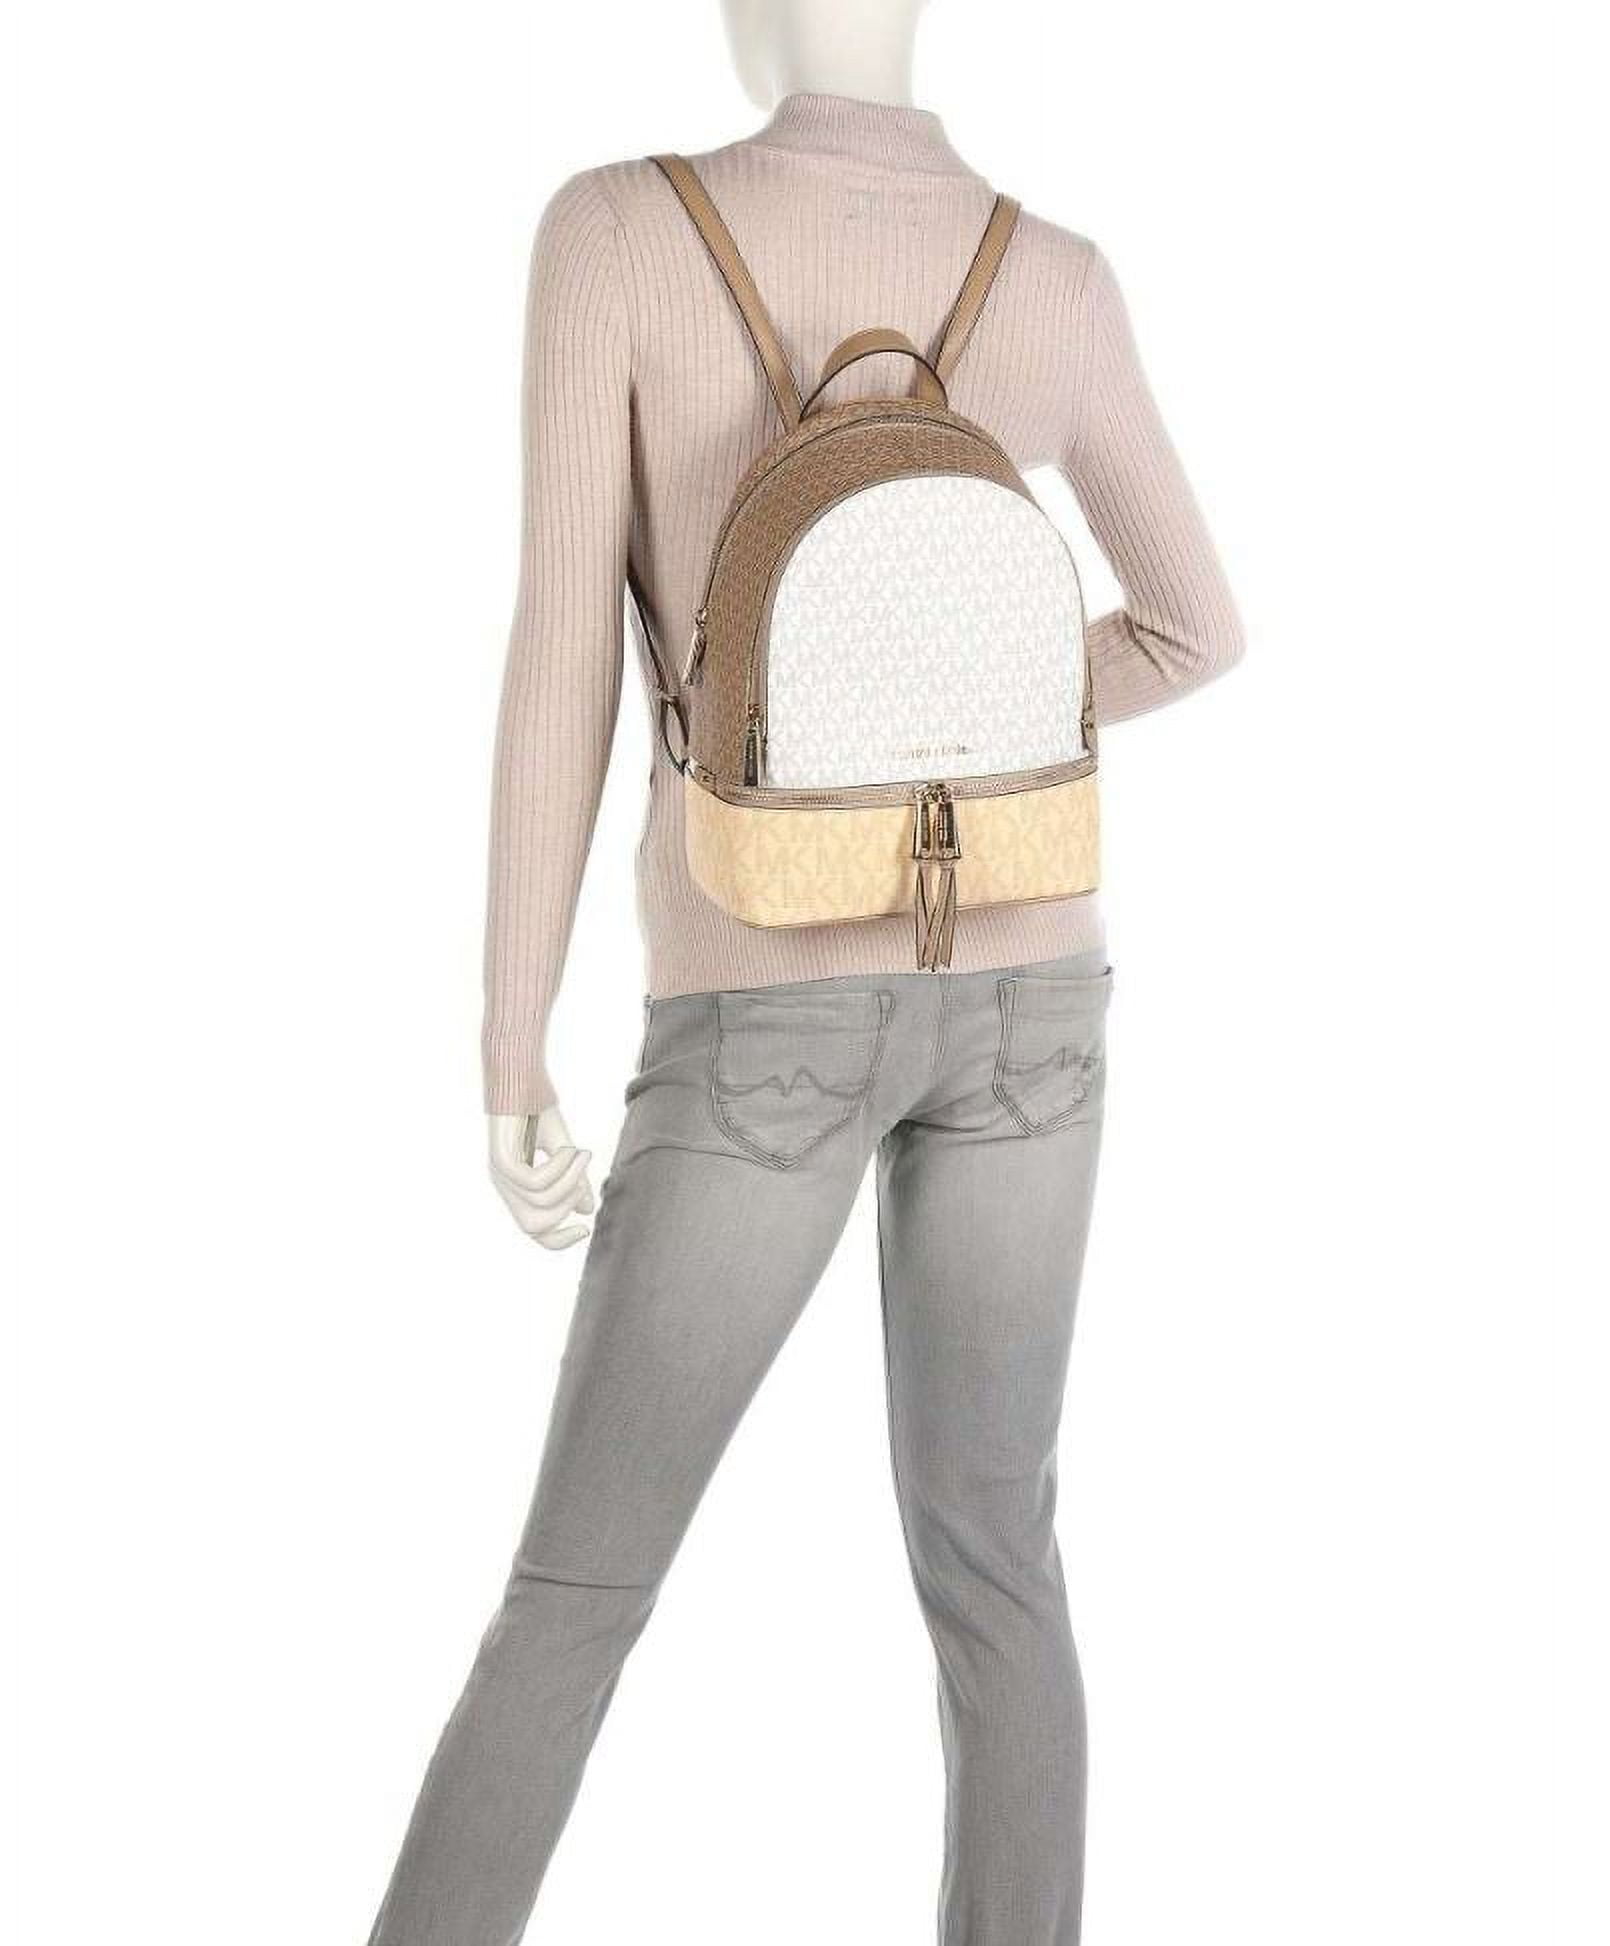 Michael Kors Rhea Zip Medium Backpack Husk Multi One Size 30S0GEZB2V-husk